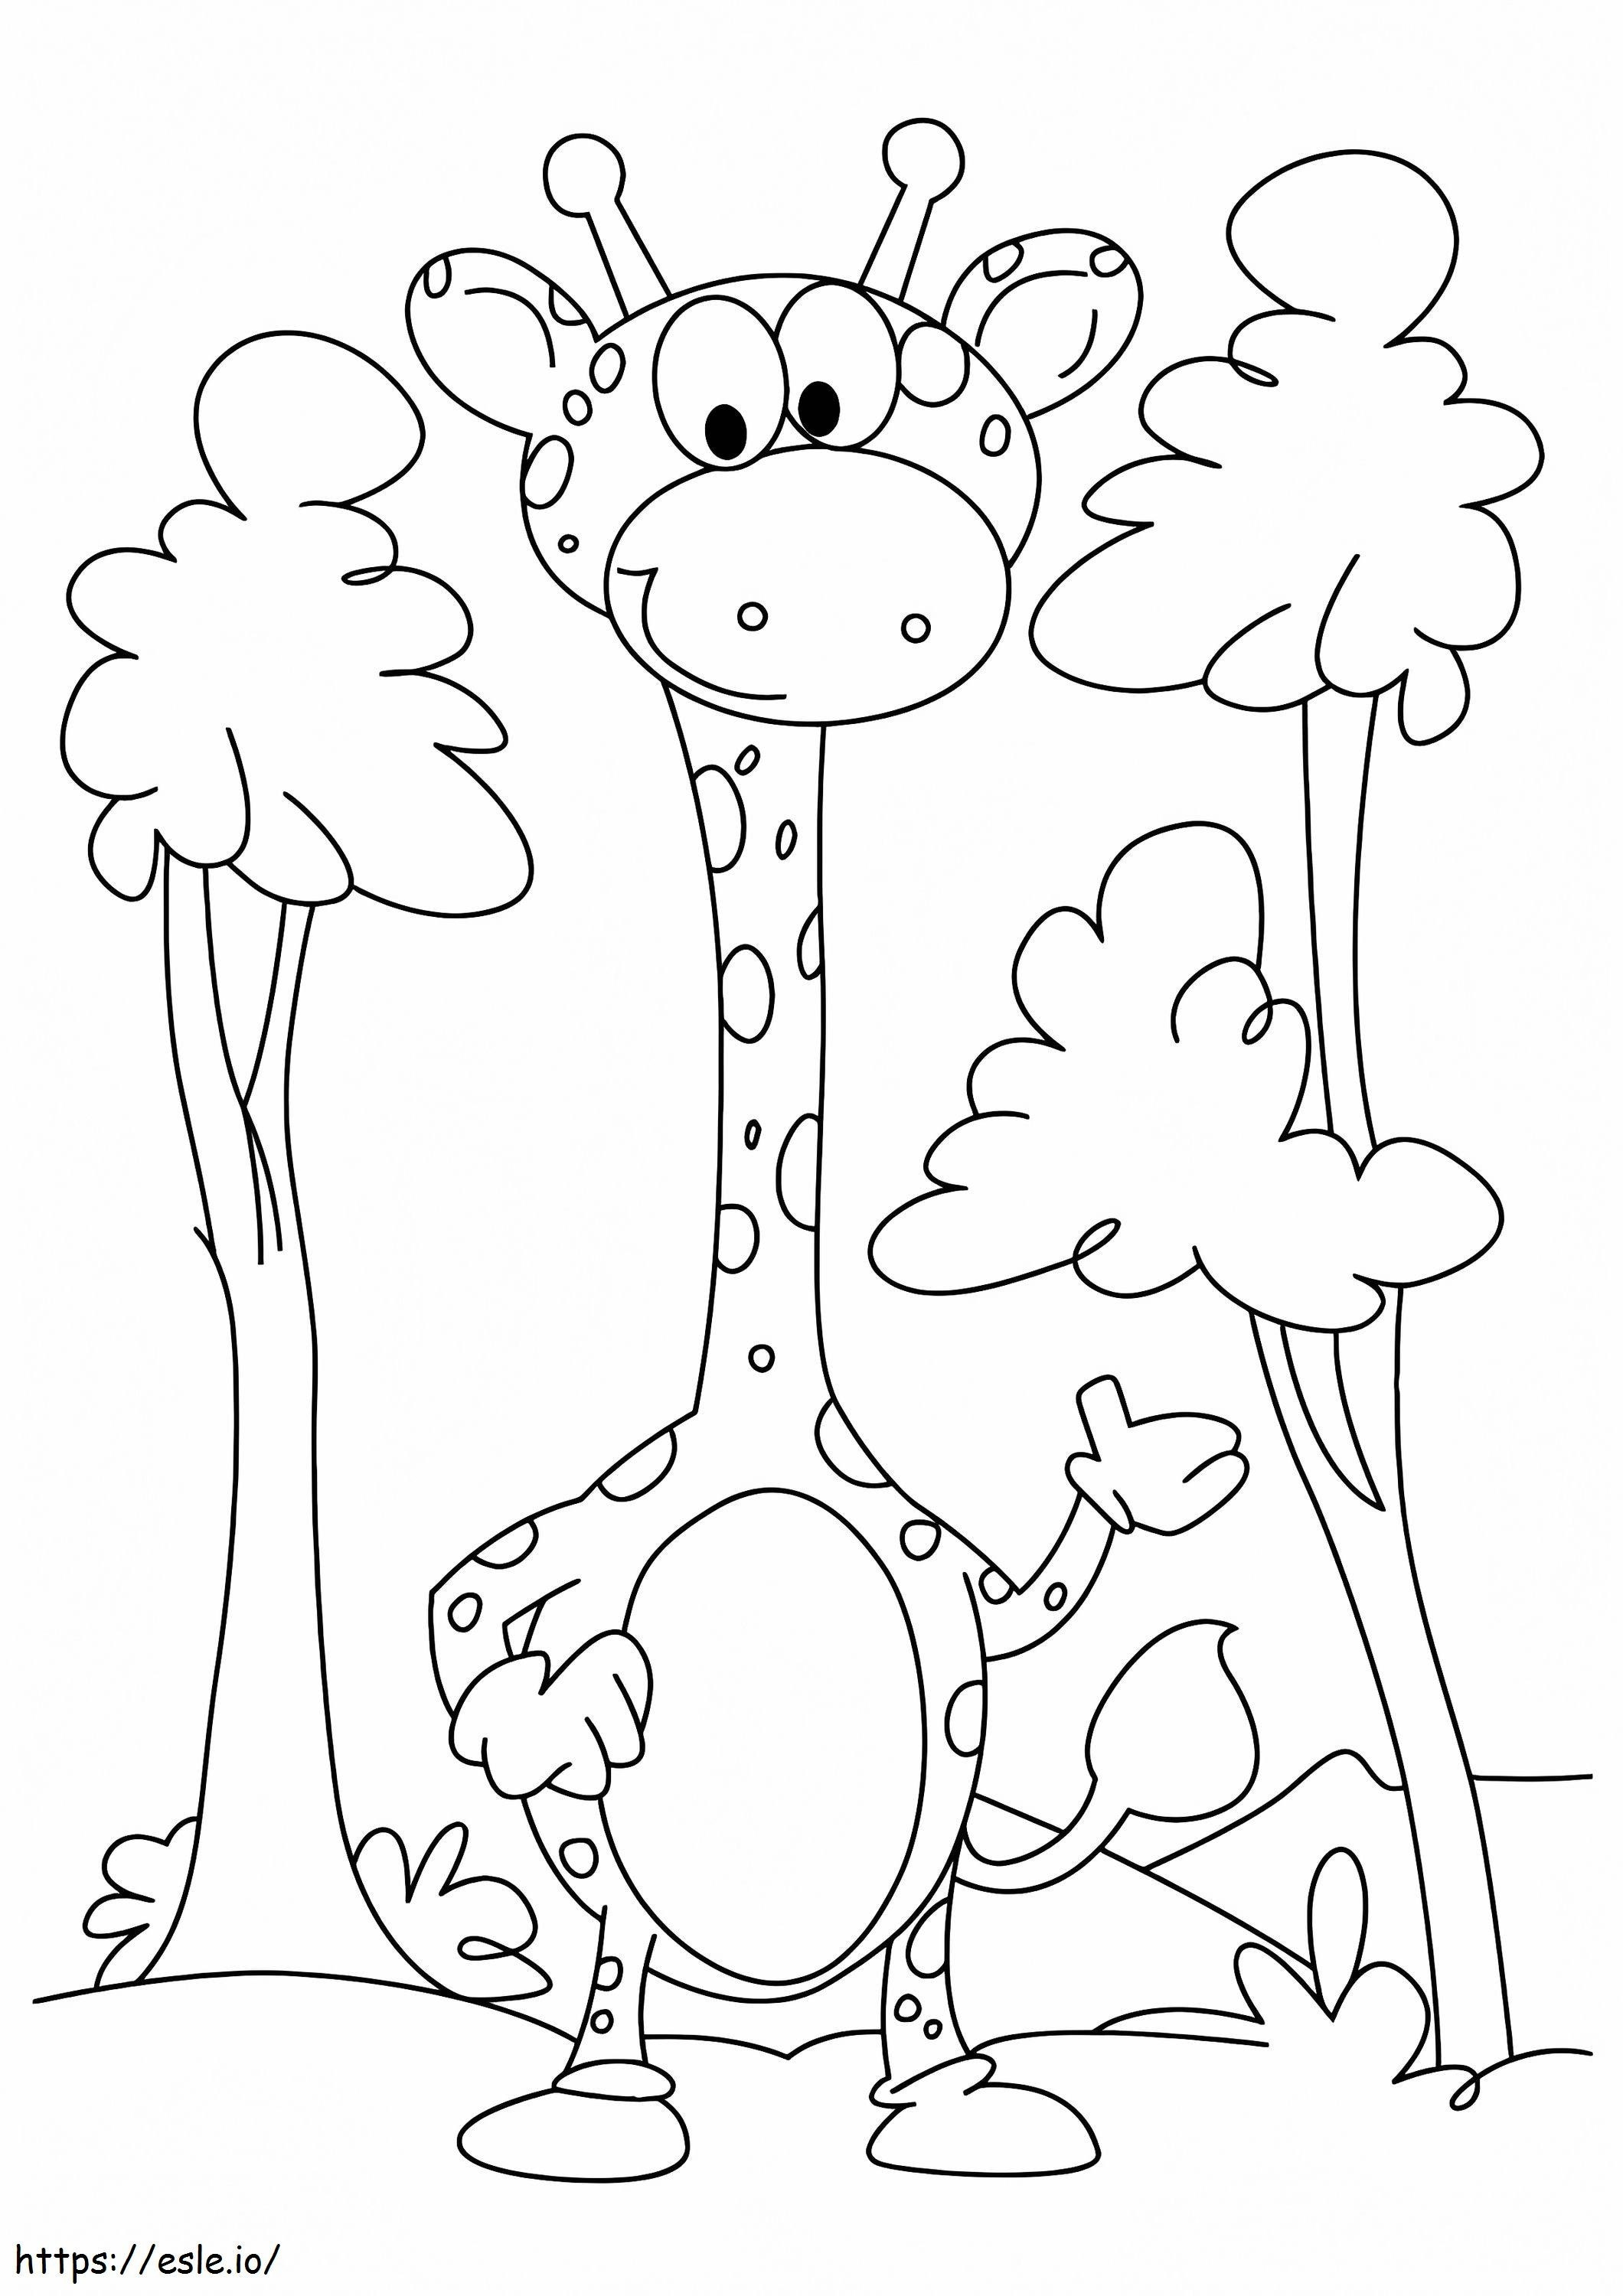 1526284438 A girafa bebê entre as árvores A4 para colorir